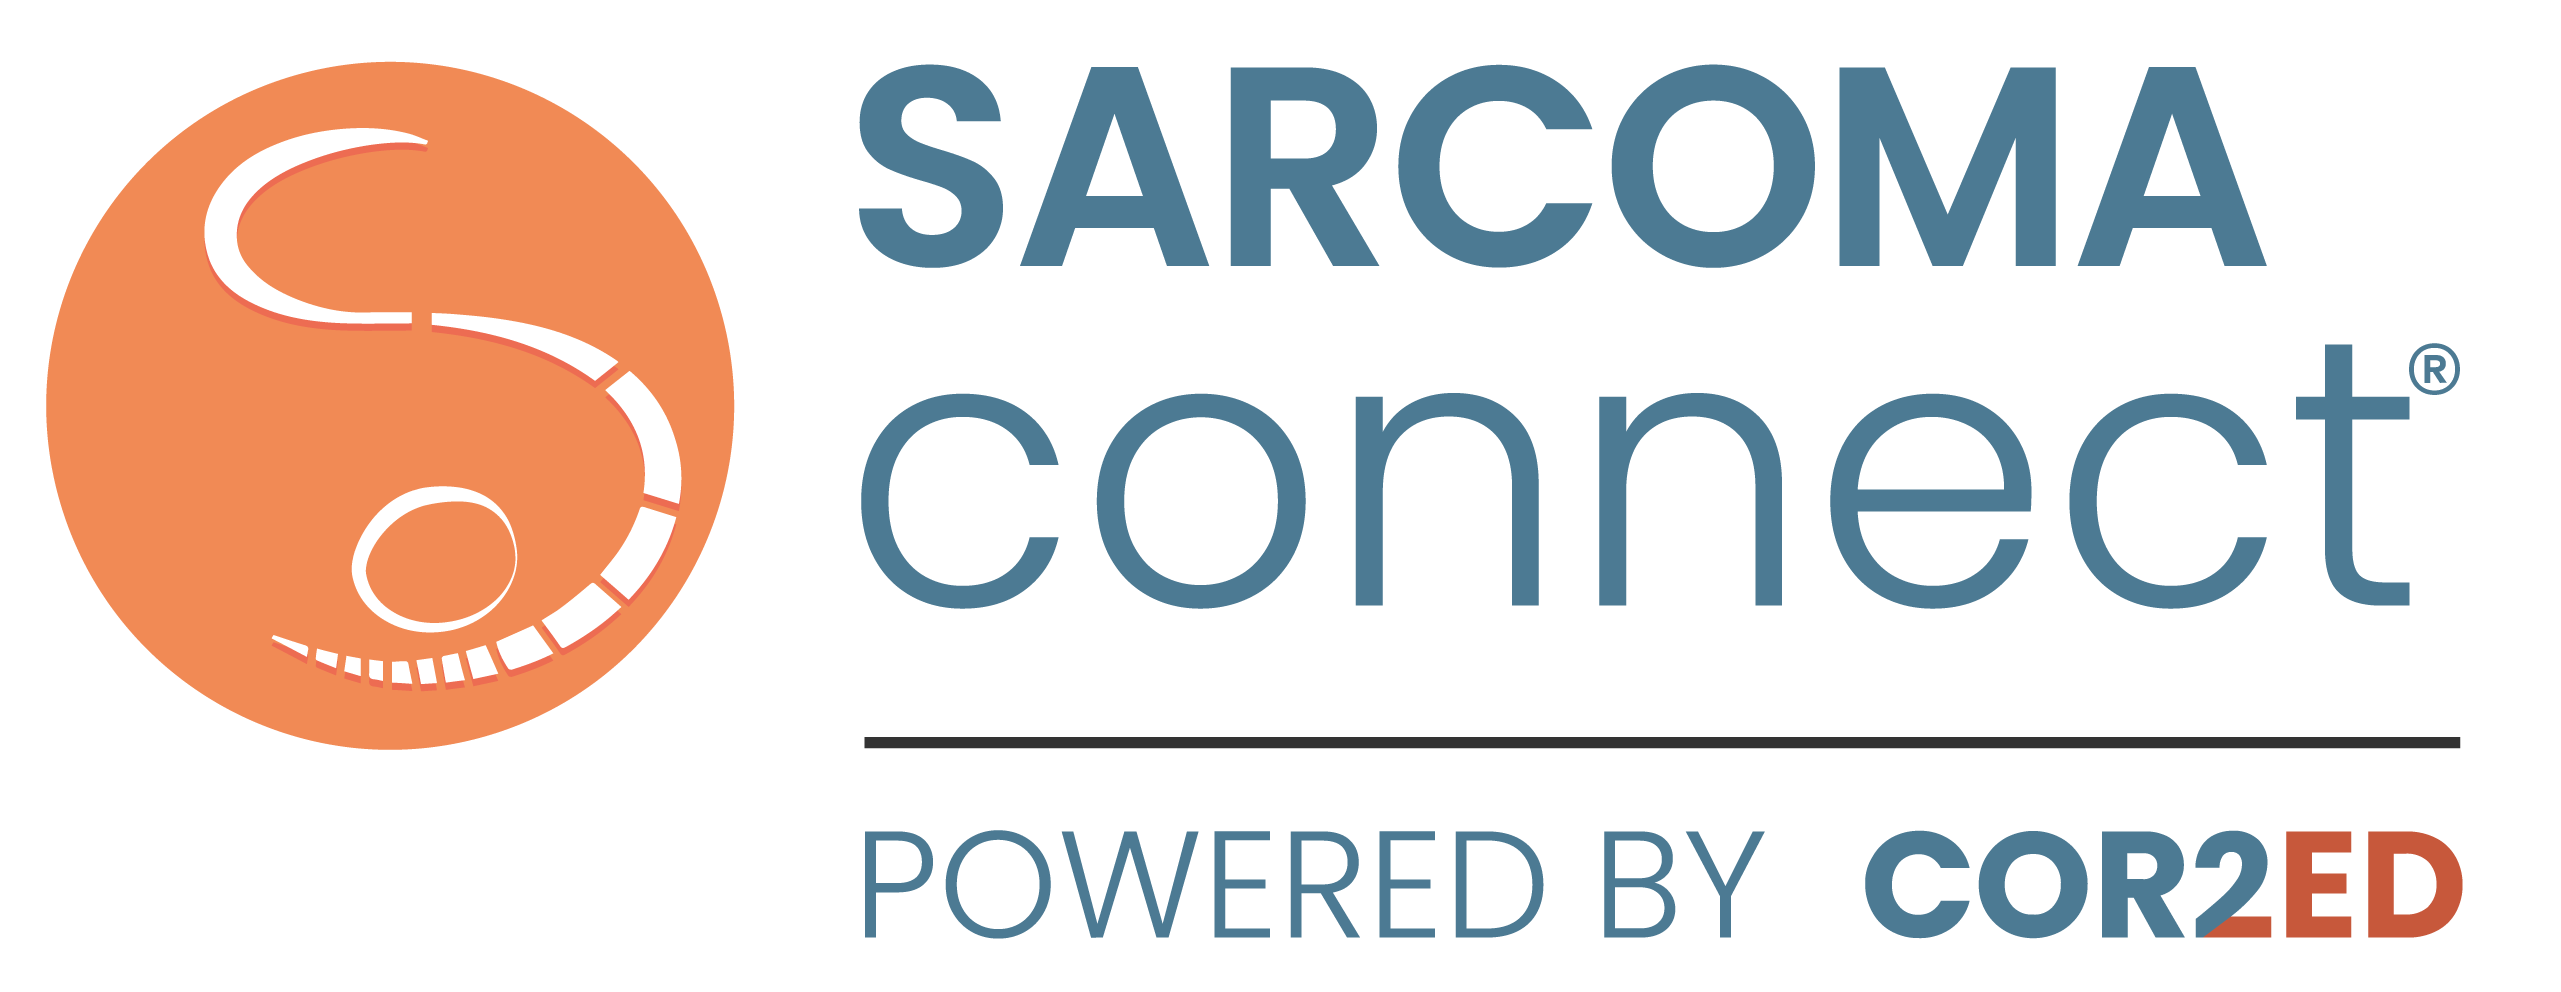 sarcoma-connect-logo